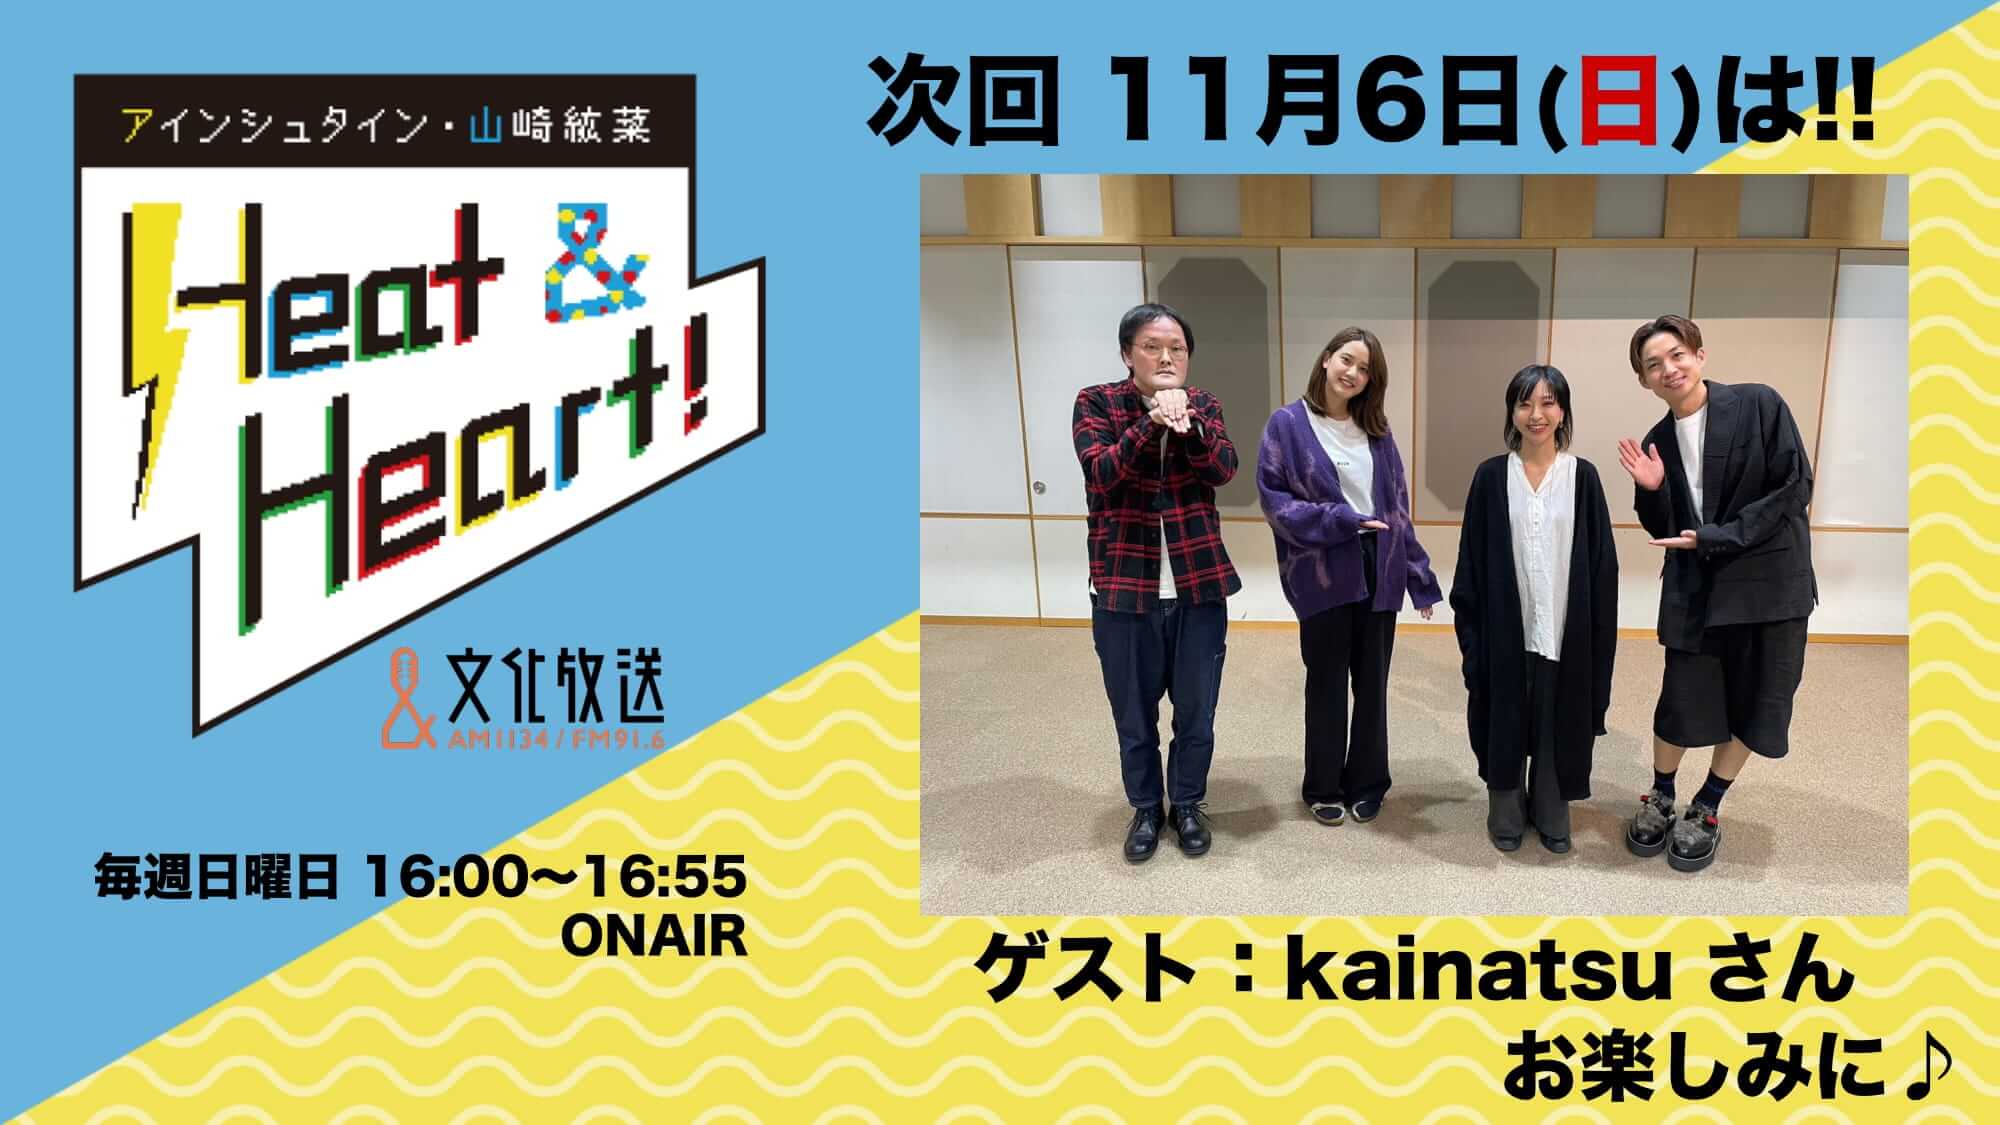 11月6日の放送はゲストにアーティスト・kainatsuさんが登場！『アインシュタイン・山崎紘菜 Heat&Heart!』